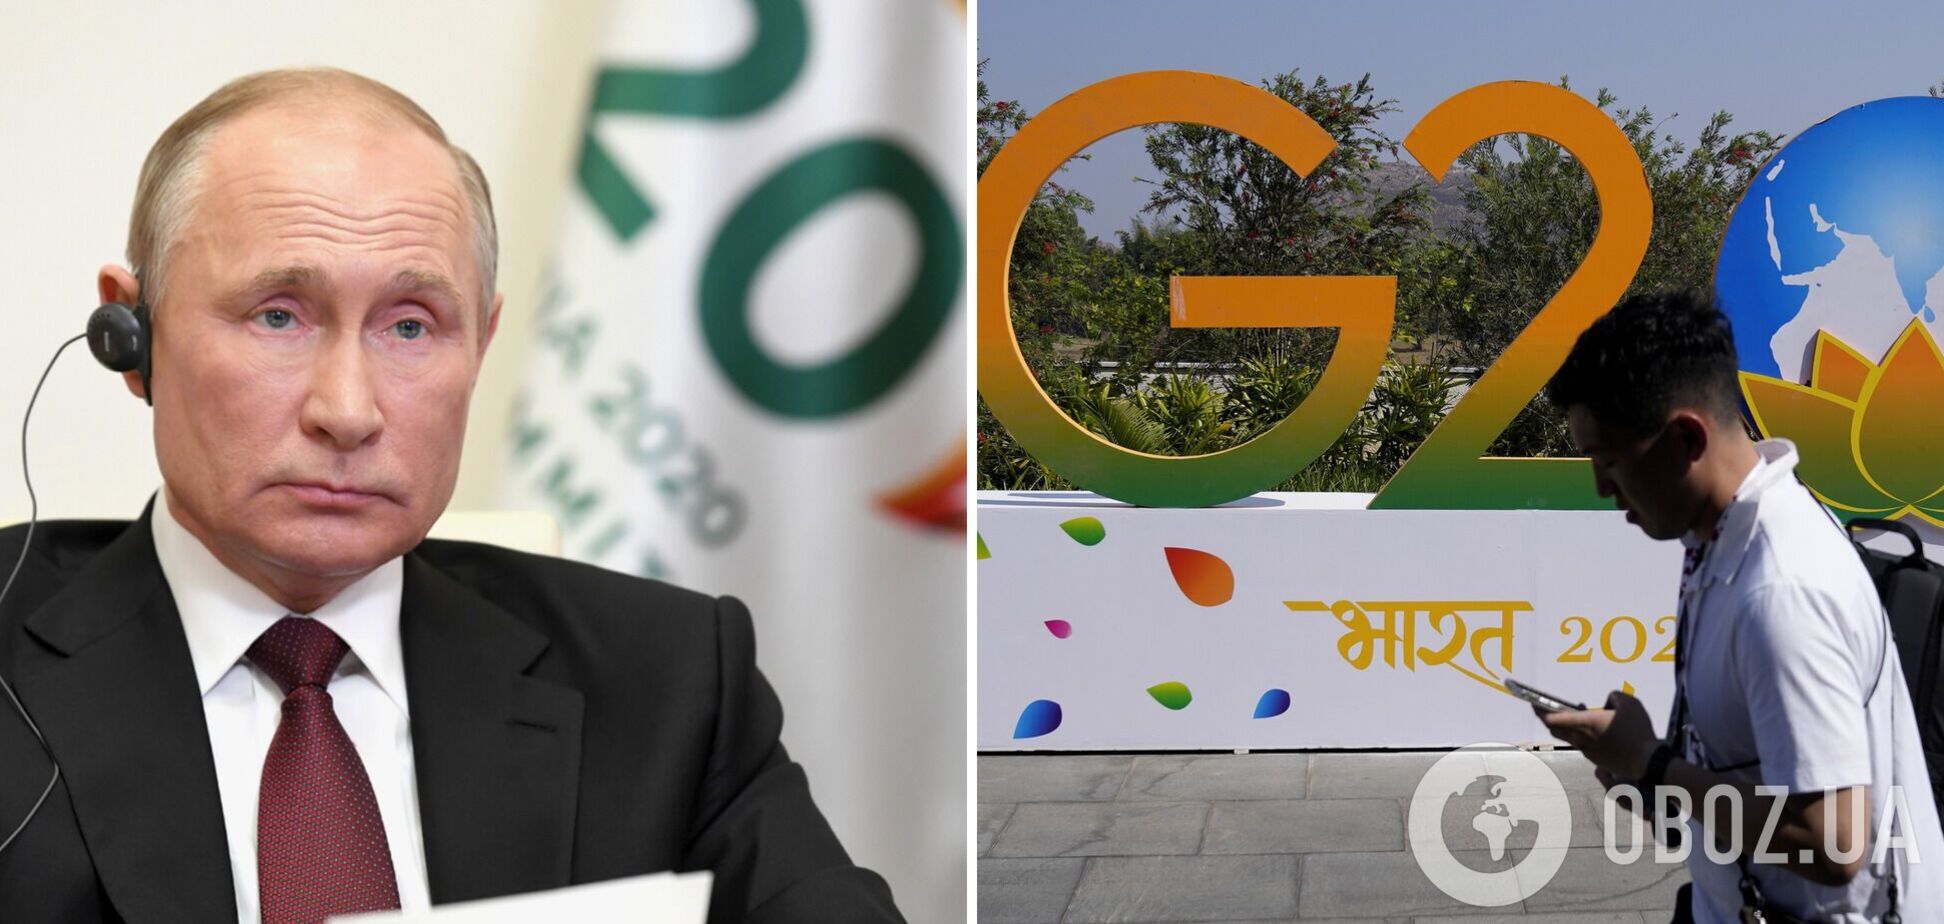 Кремль подстраивается под Индию, чтобы Путин попал на G20 – Bloomberg